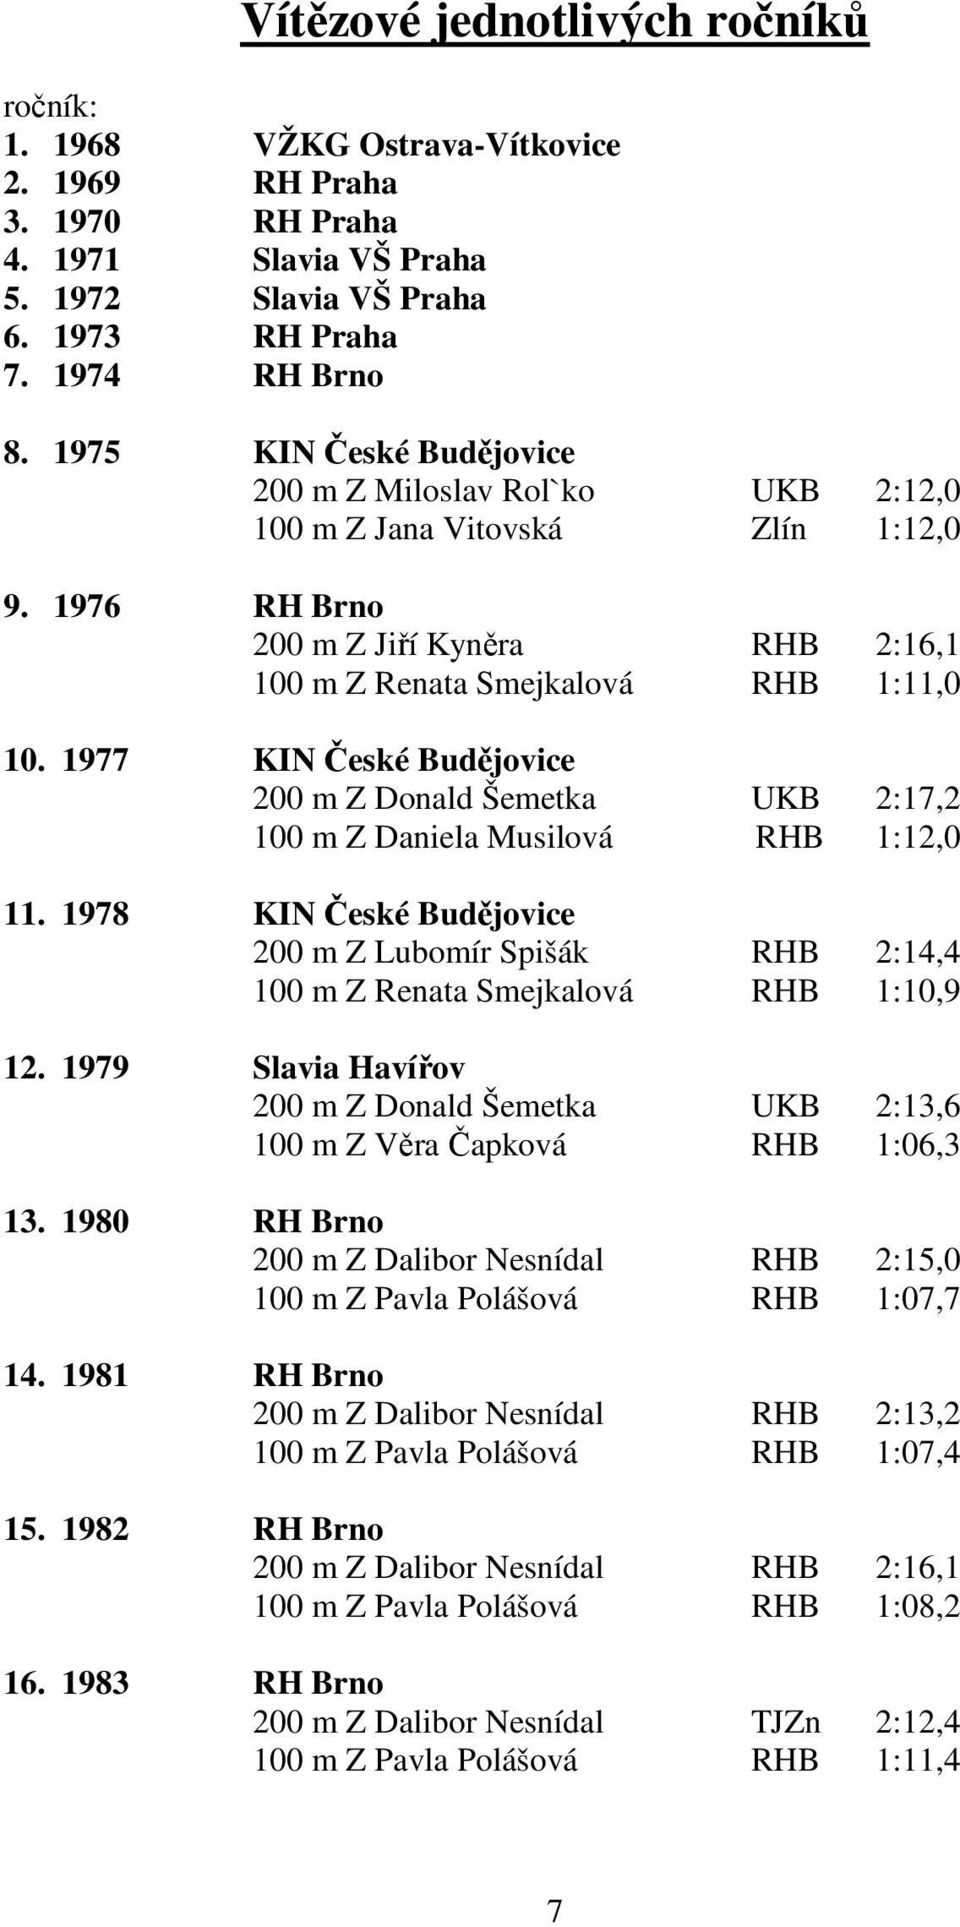 1977 KIN České Budějovice 200 m Z Donald Šemetka UKB 2:17,2 100 m Z Daniela Musilová RHB 1:12,0 11. 1978 KIN České Budějovice 200 m Z Lubomír Spišák RHB 2:14,4 100 m Z Renata Smejkalová RHB 1:10,9 12.